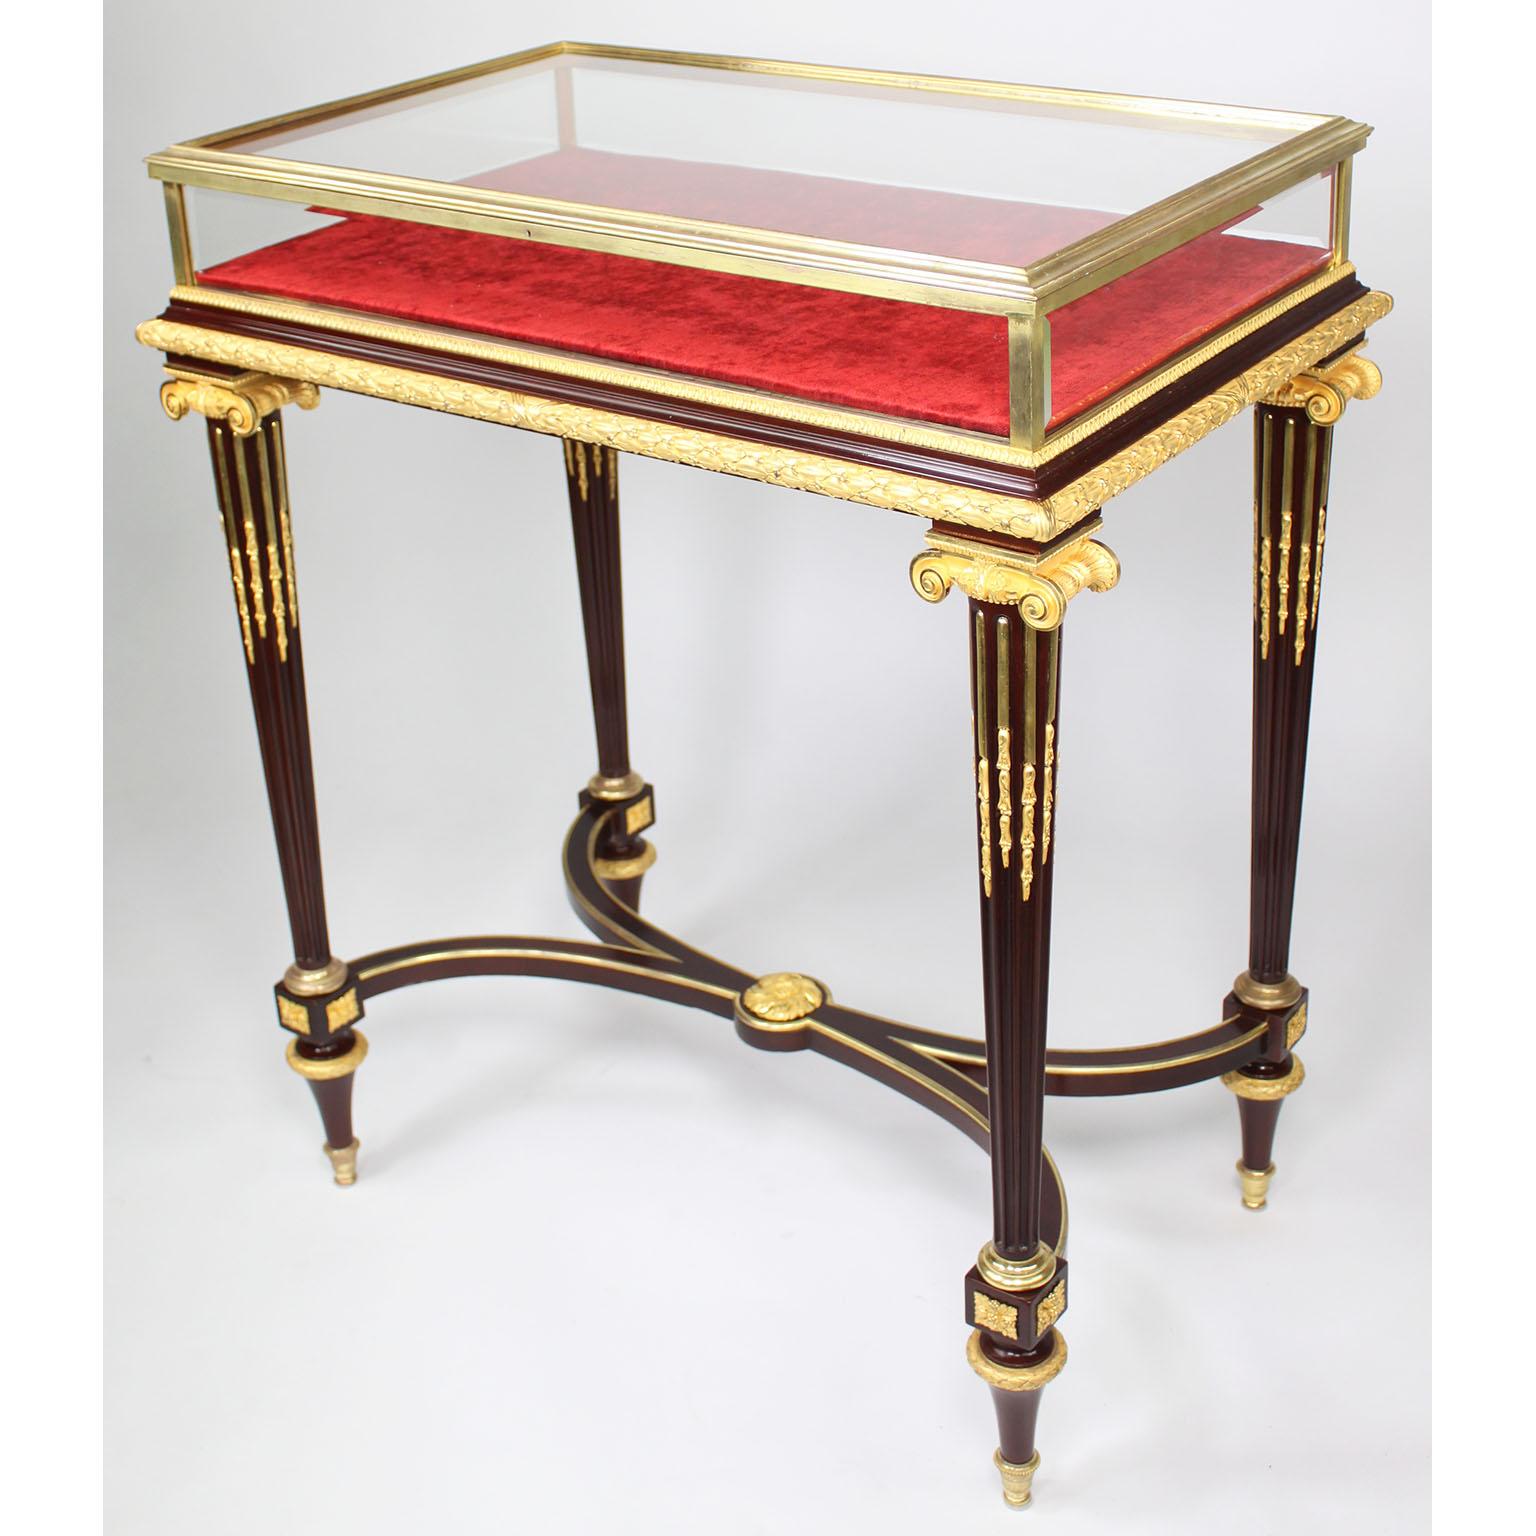 Très belle table vitrine de bijouterie de Henri Dasson, de style Louis XVI, en acajou et bronze doré, avec un plateau vitré à charnière et des côtés en verre biseauté dans un cadre en bronze moulé, s'ouvrant sur un intérieur rembourré en rouge,